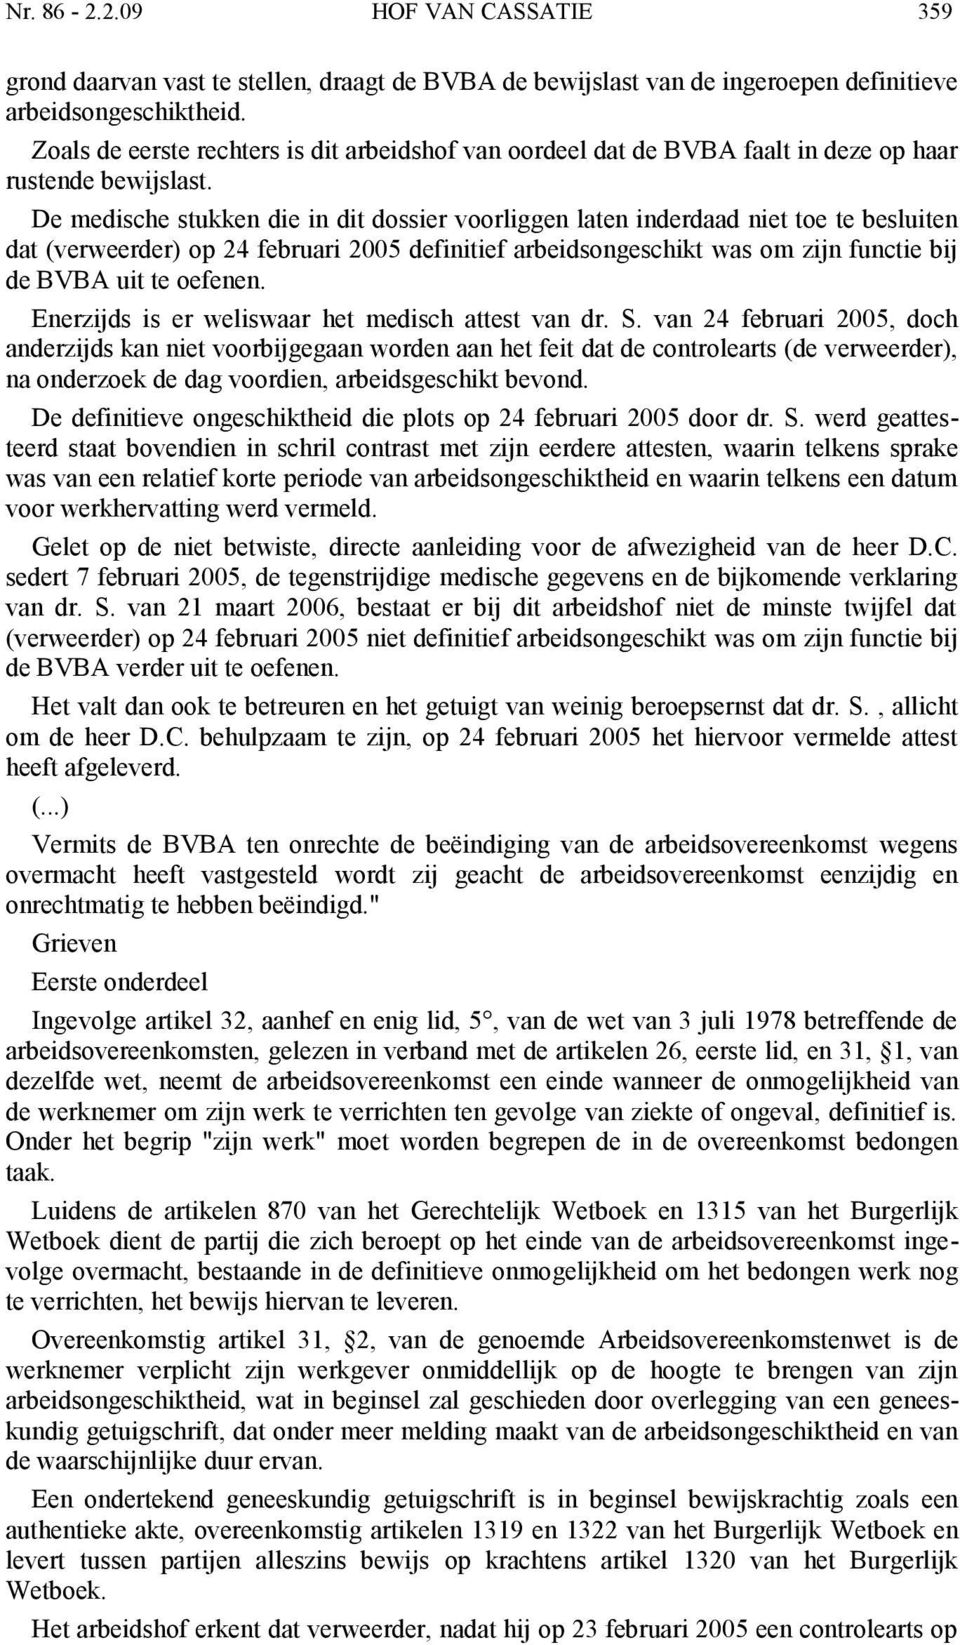 De medische stukken die in dit dossier voorliggen laten inderdaad niet toe te besluiten dat (verweerder) op 24 februari 2005 definitief arbeidsongeschikt was om zijn functie bij de BVBA uit te